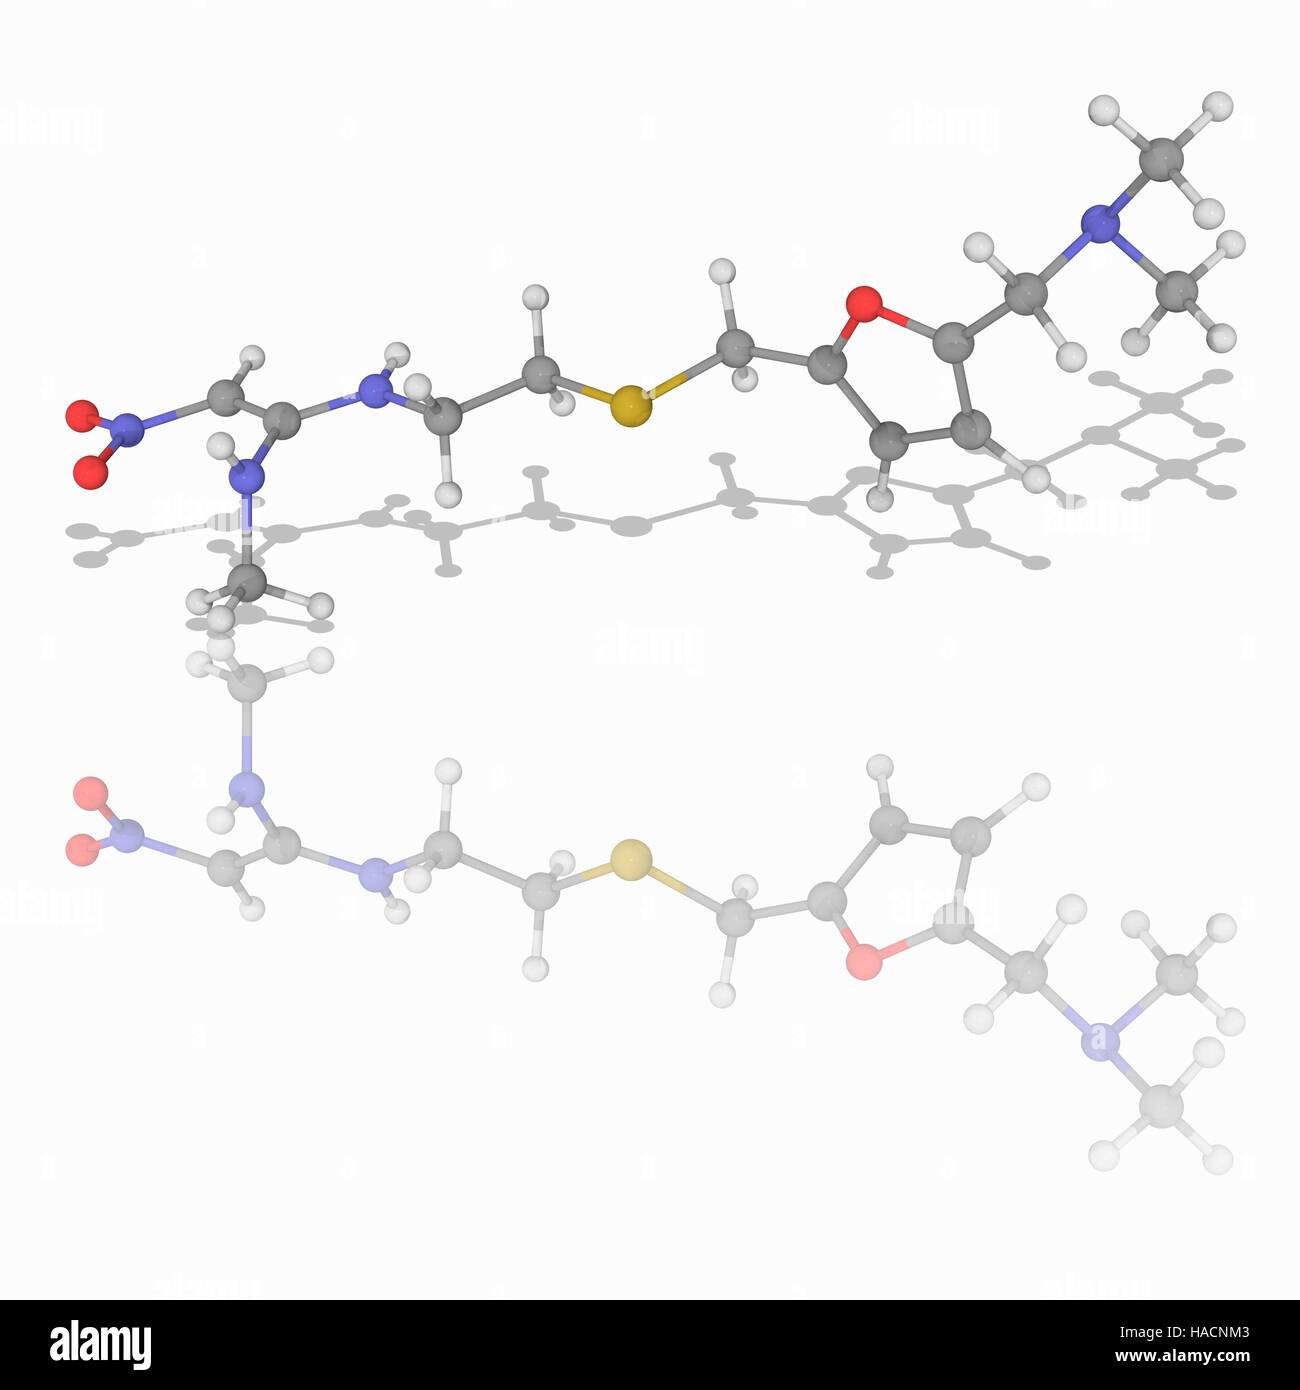 Ranitidin. Molekulares Modell des Medikament Ranitidin (C13. H22. N4. O3. (S), einem Histamin H2-Rezeptor-Antagonisten, die Magensäureproduktion hemmt und dient zur Behandlung von Magengeschwüren Krankheit und gastroösophageale Refluxkrankheit (GERD). Es ist als Zantac vermarktet. Atome als Kugeln dargestellt werden und sind farblich gekennzeichnet: Kohlenstoff (grau), Wasserstoff (weiß), Stickstoff (blau), Sauerstoff (rot) und Schwefel (gelb). Abbildung. Stockfoto